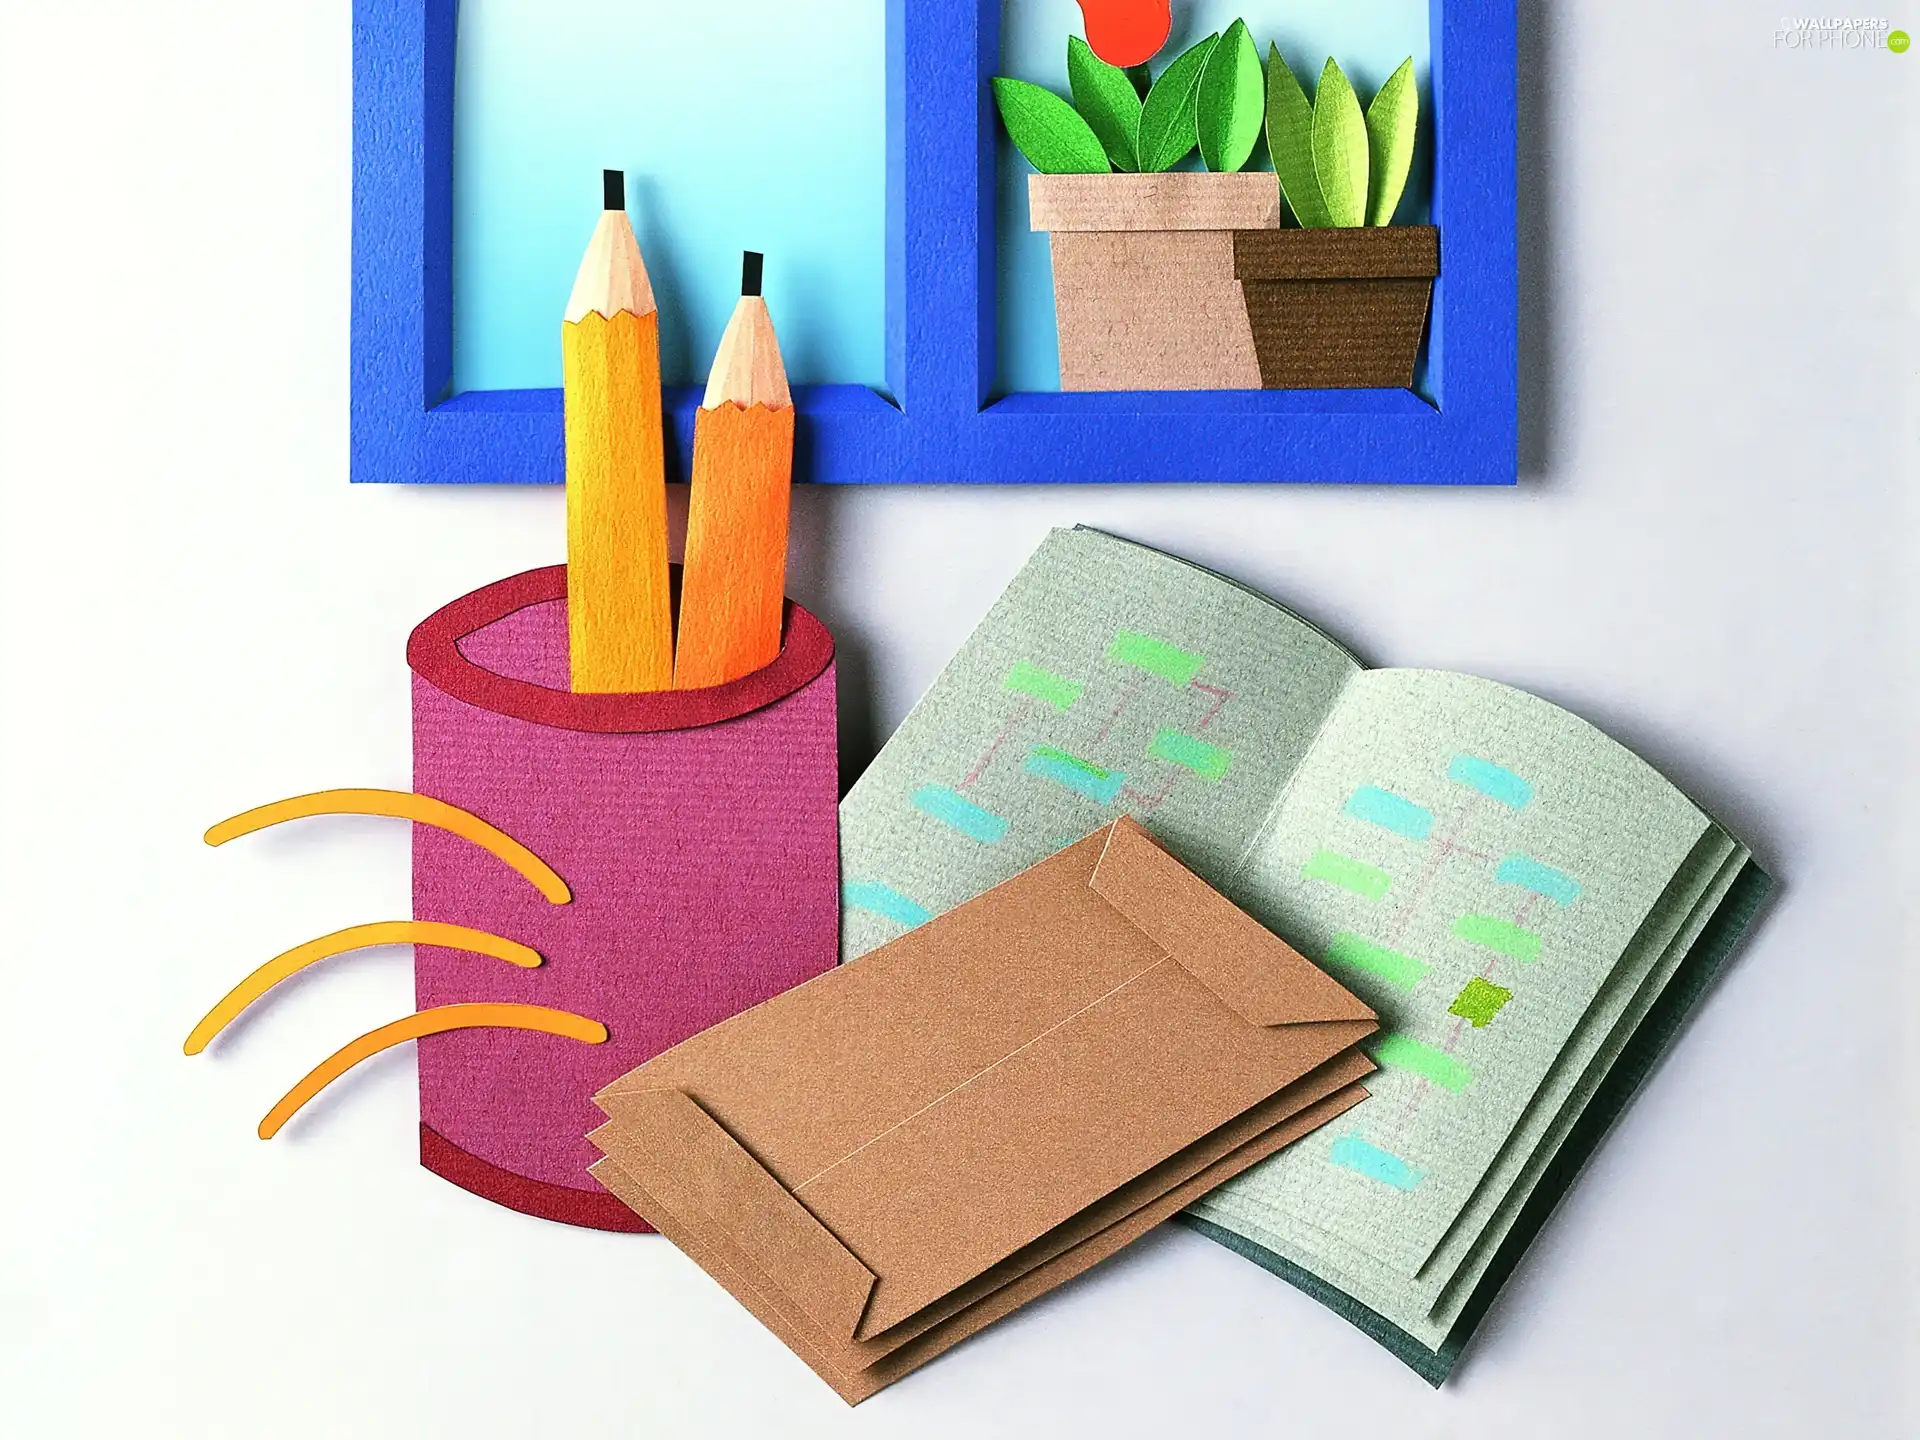 Book, Pencils, Papier Art, Envelopes